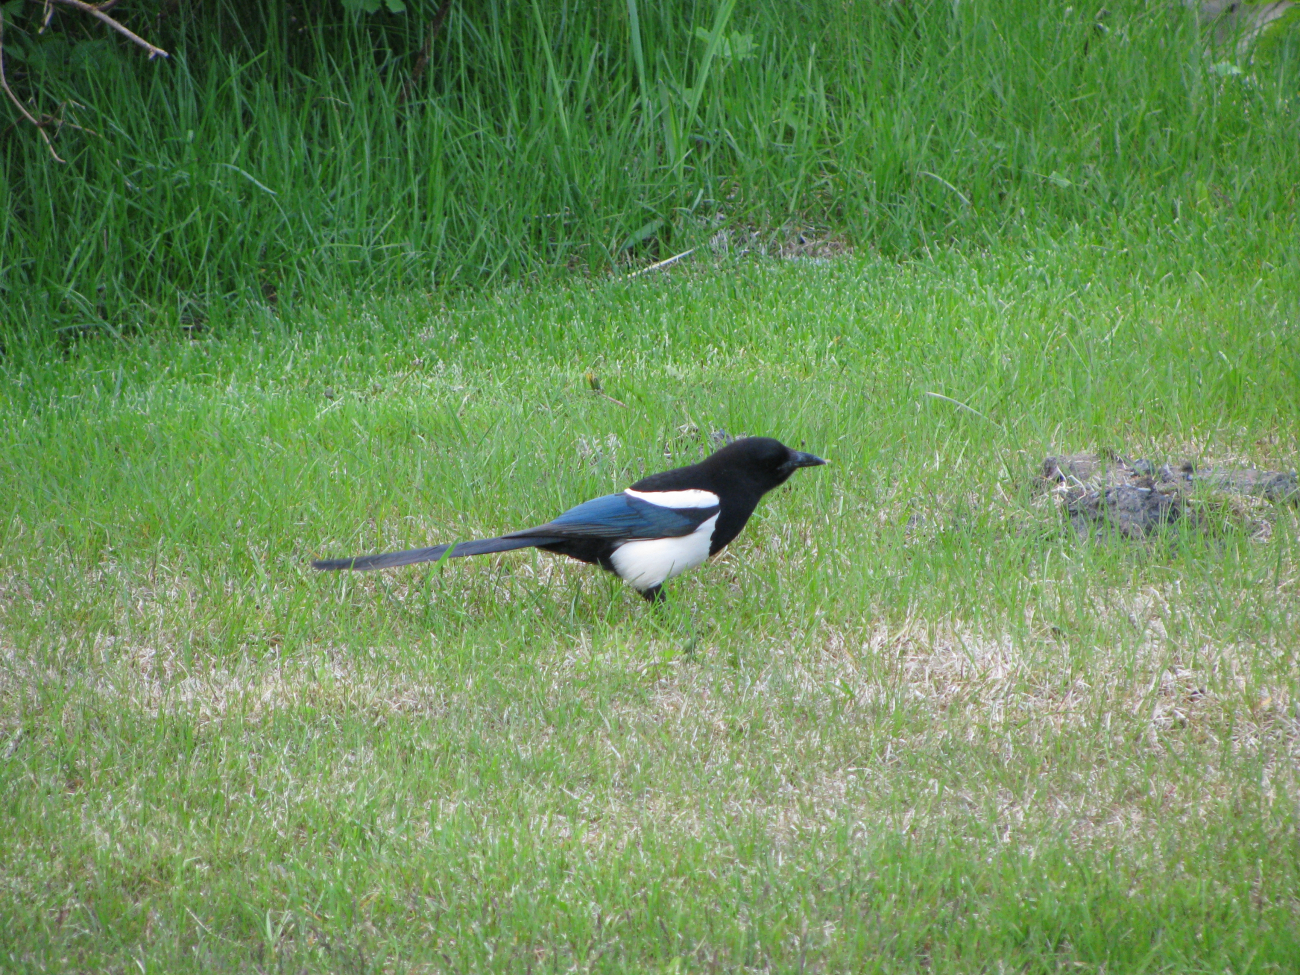 Black-billed magpie